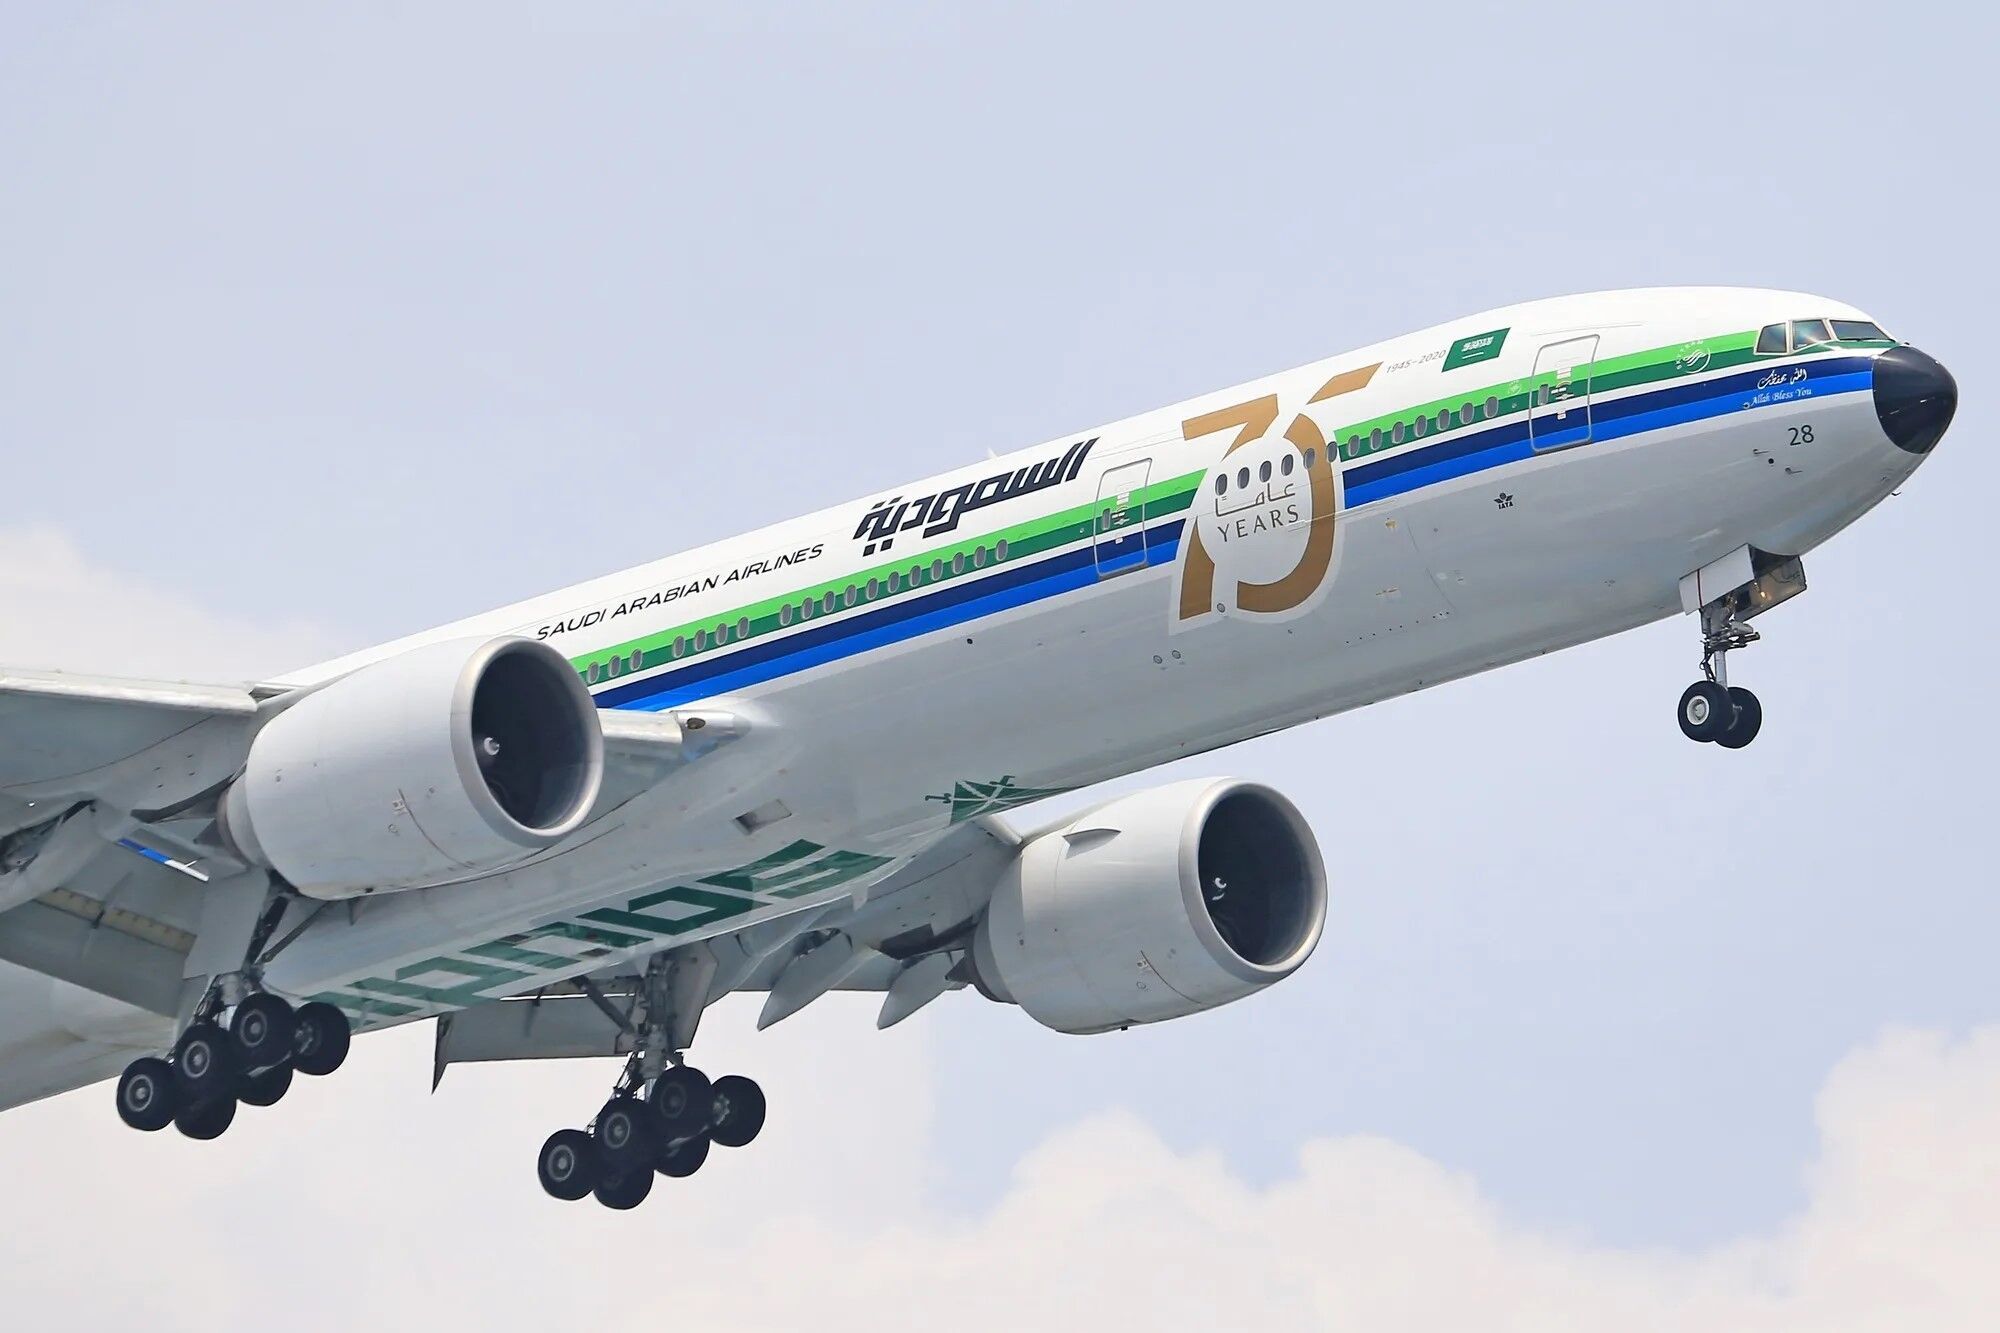 Саудовская Аравия внедрила щедрые компенсации для пассажиров за потерю багажа, пересадку и отмену рейса